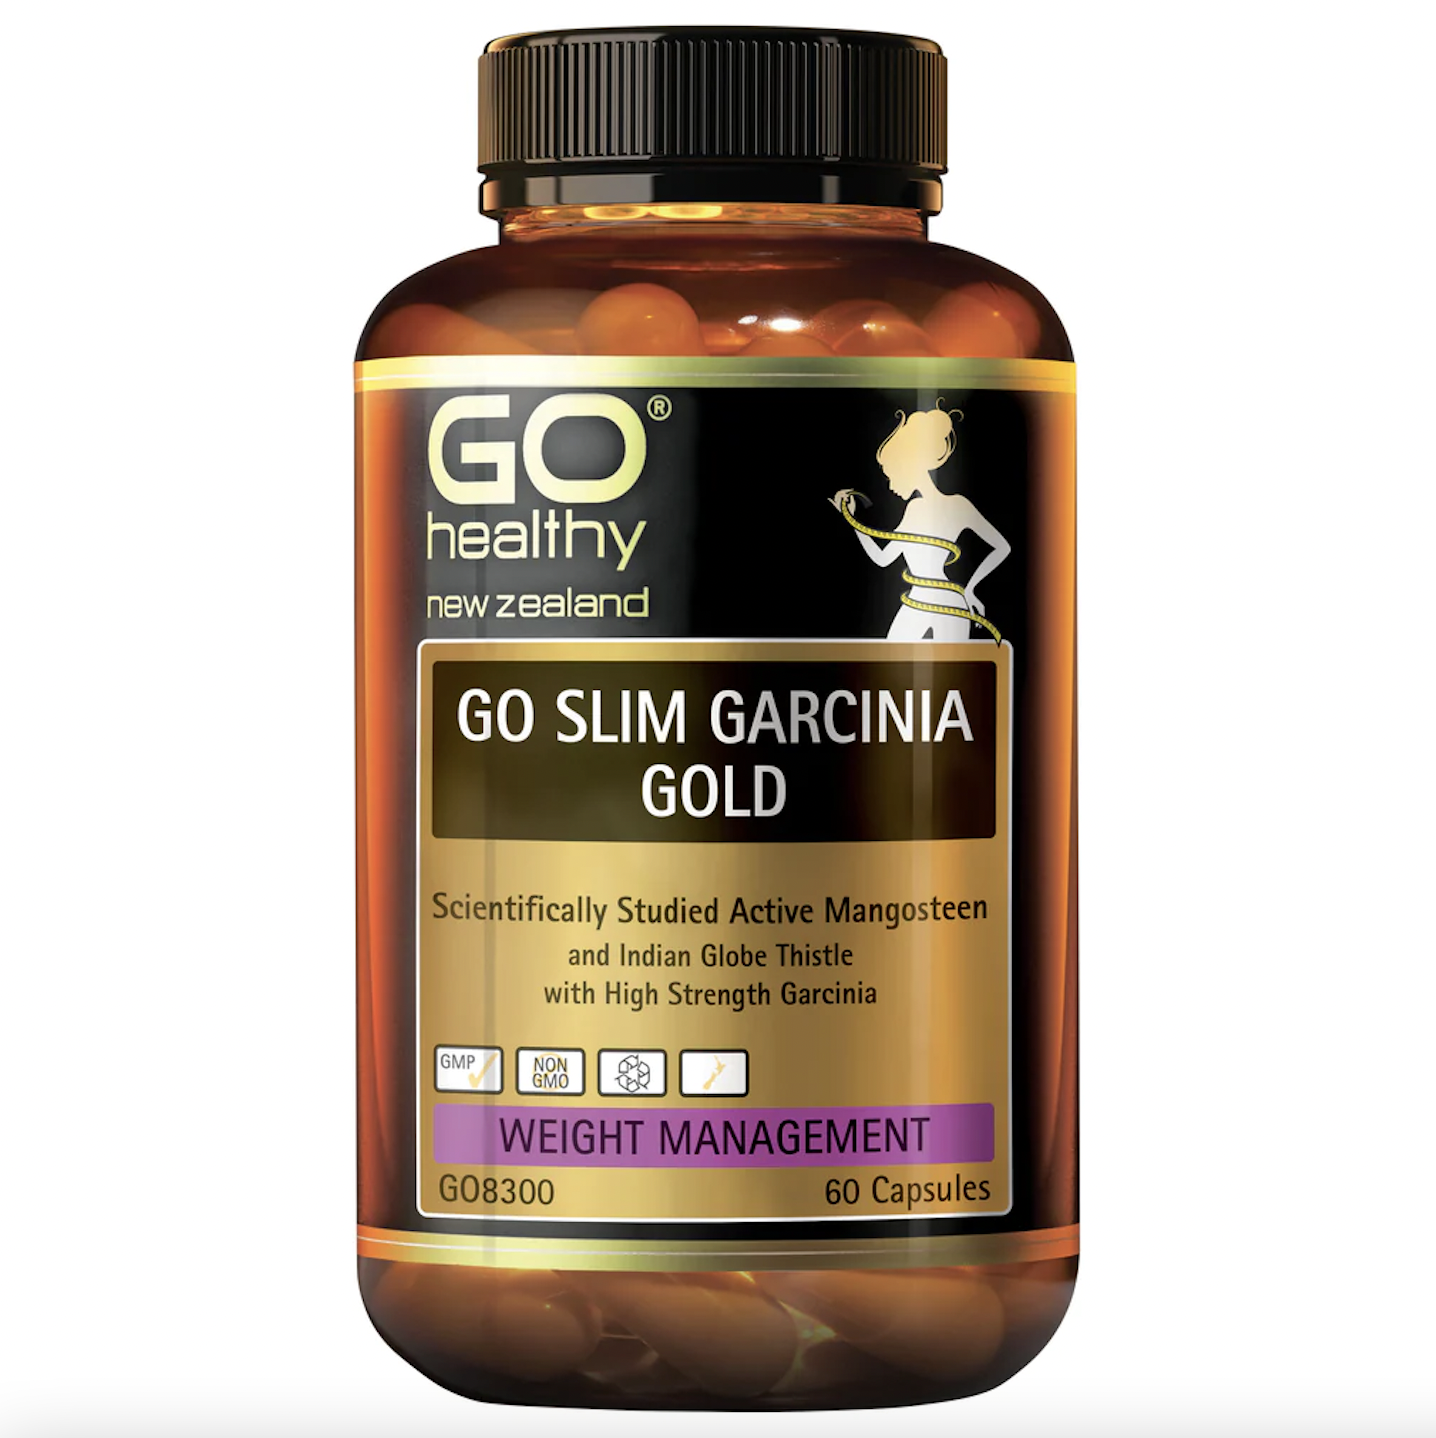 VIÊN UỐNG HỖ TRỢ GIẢM CÂN GO Healthy Slim Garcinia Gold